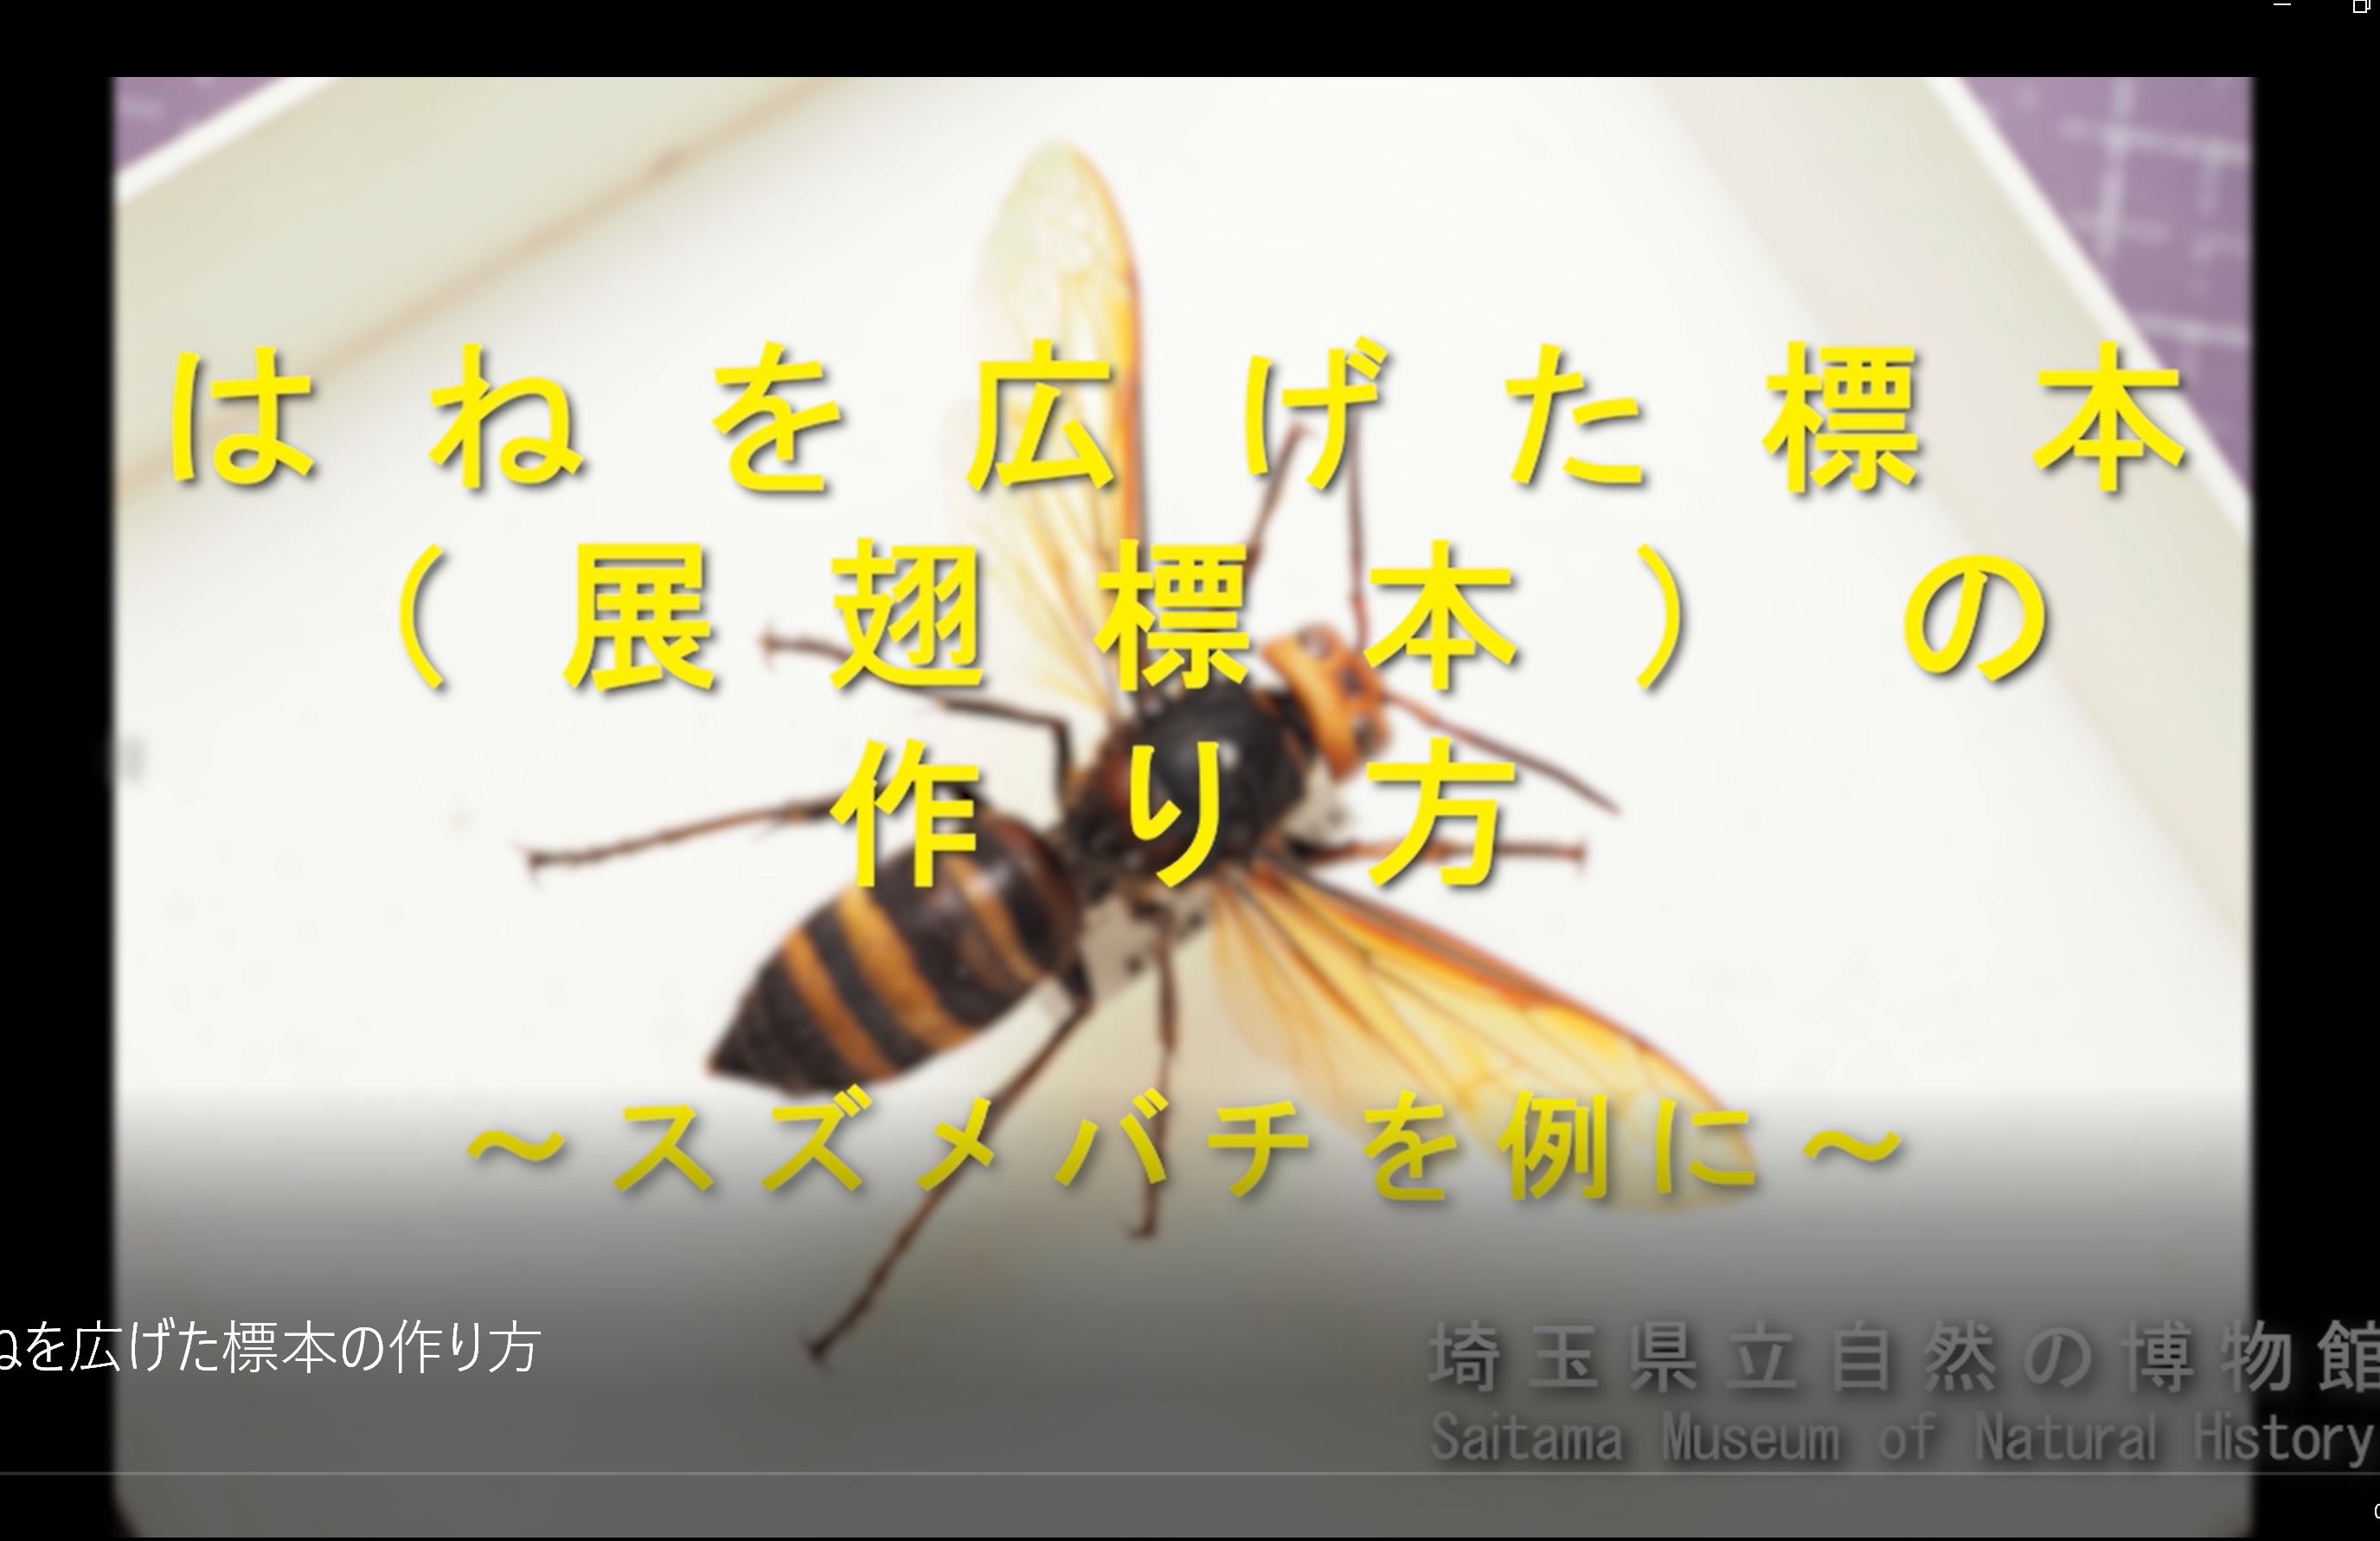 埼玉県立自然の博物館 Twitter पर 昆虫標本の作り方を解説した動画を作成しました 脚を整えて作成する展脚 てんきゃく 標本の作り方 と翅を広げて作成する展翅 てんし 標本の作り方の2本立てです 皆様の昆虫標本づくりの参考になれば幸いです 展脚標本 T